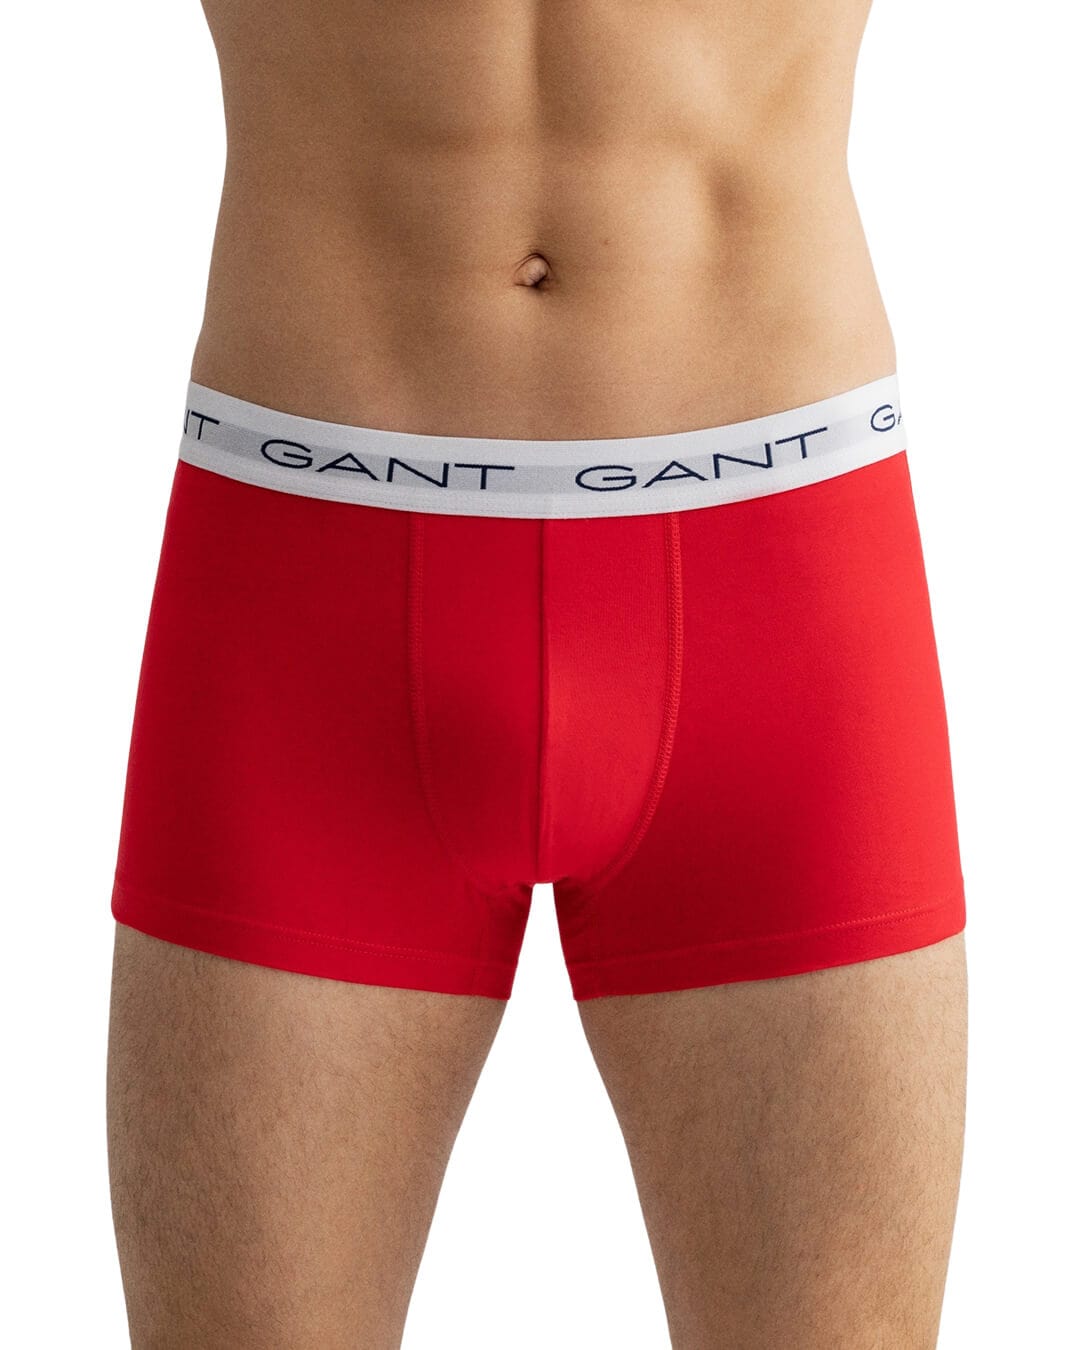 Gant Underwear Gant Navy, Red And White Three-Pack Trunks